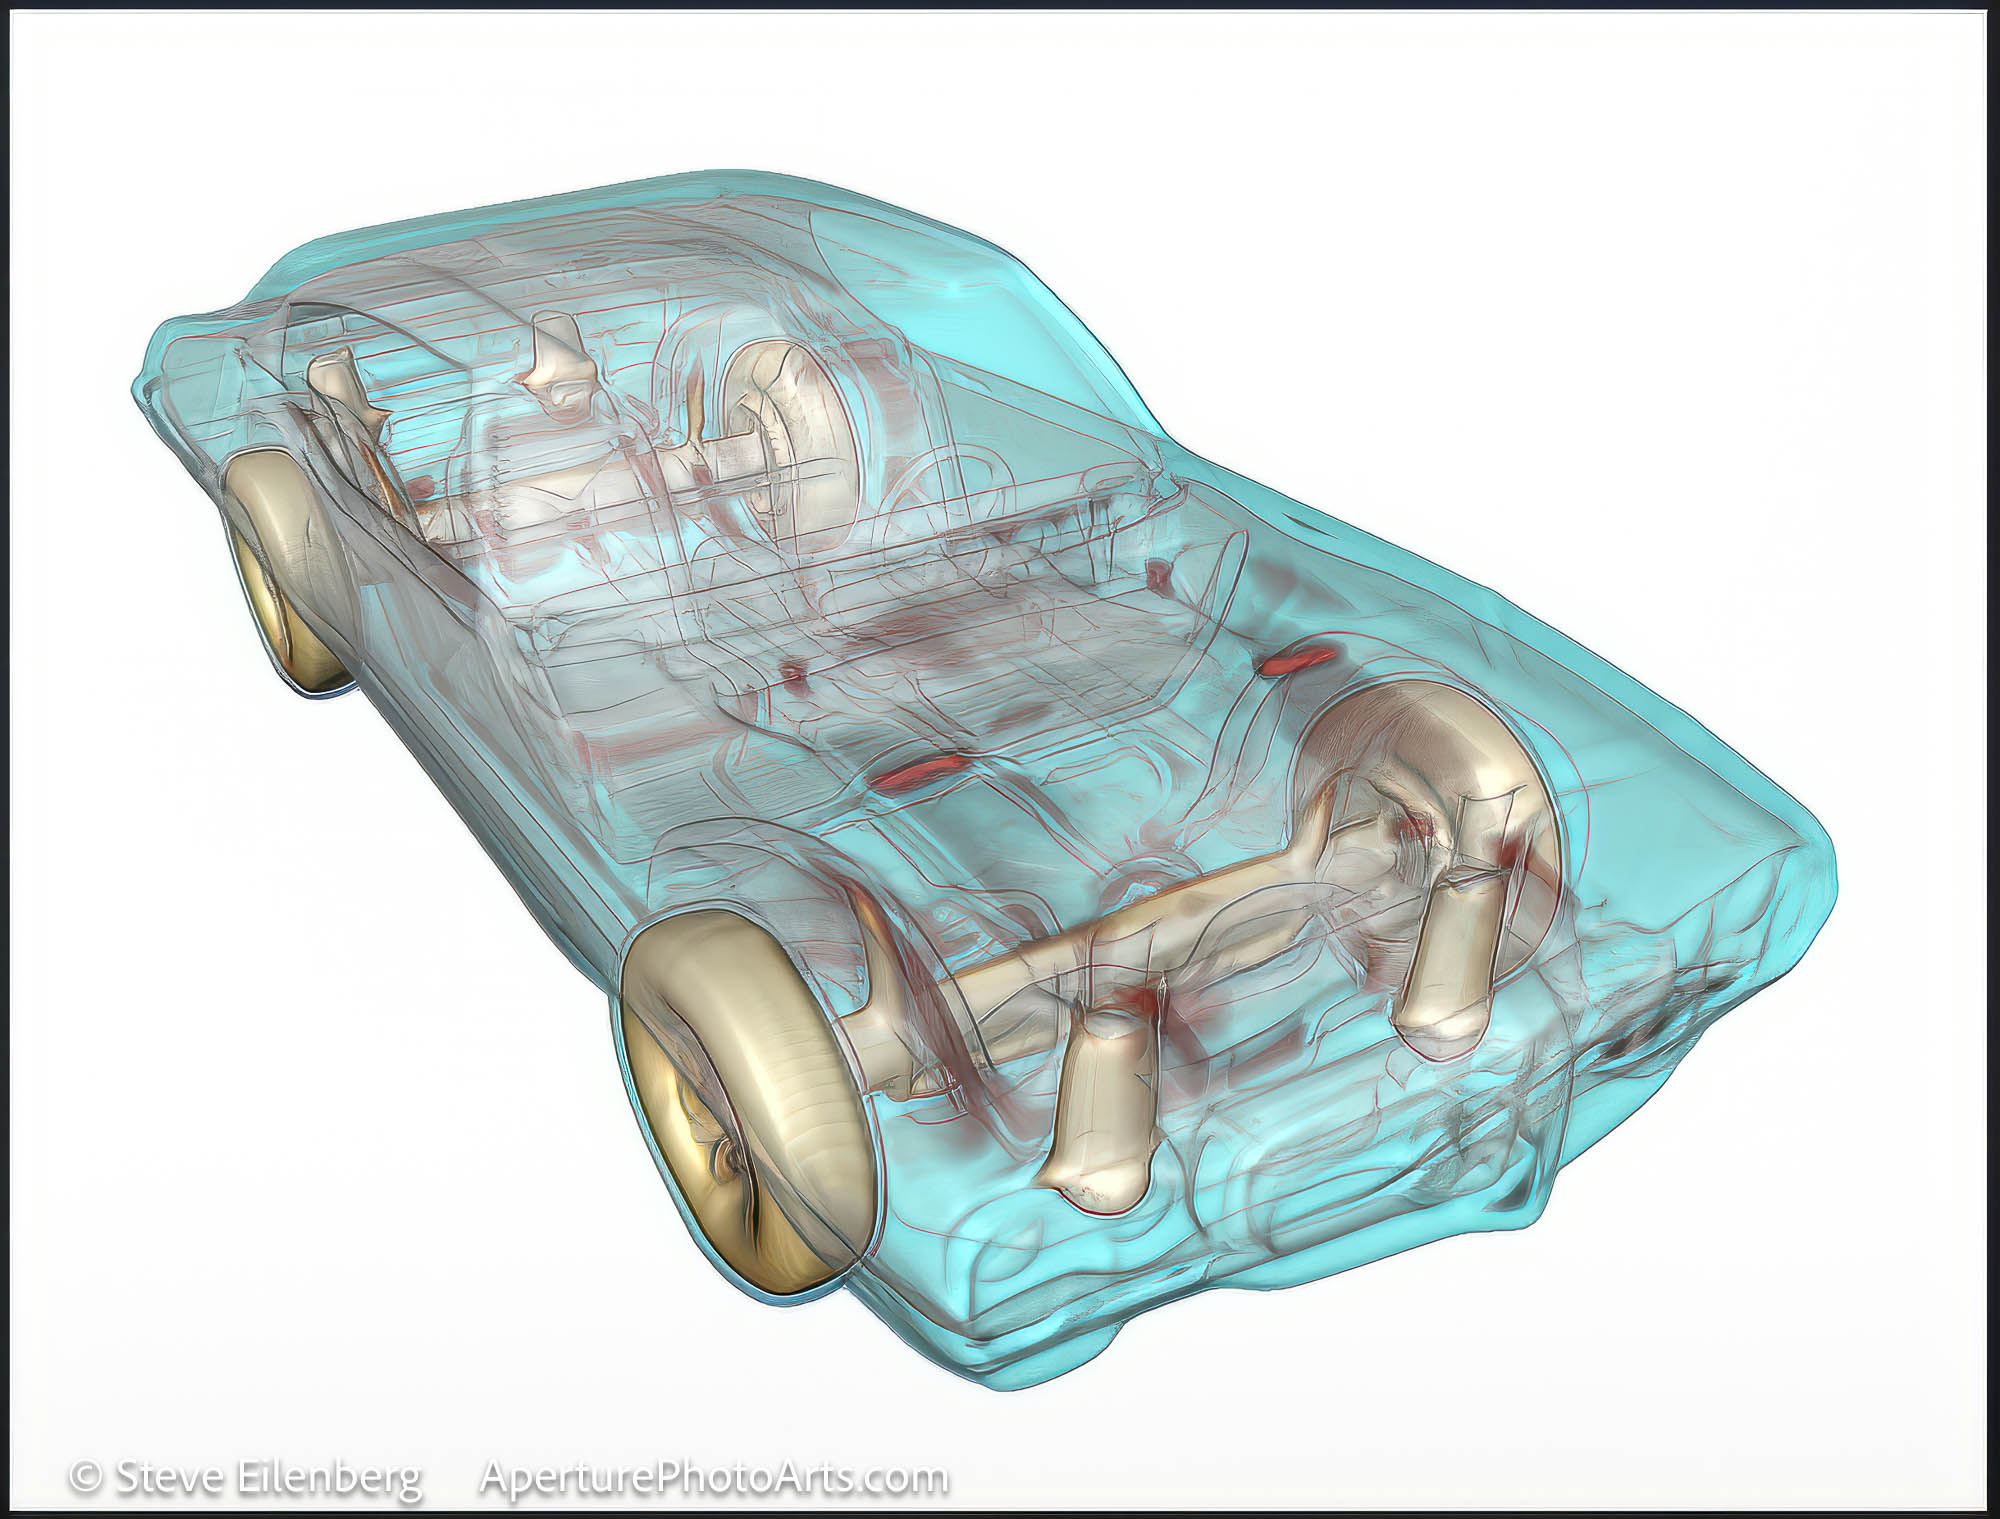 X-Ray GTO model from dealership